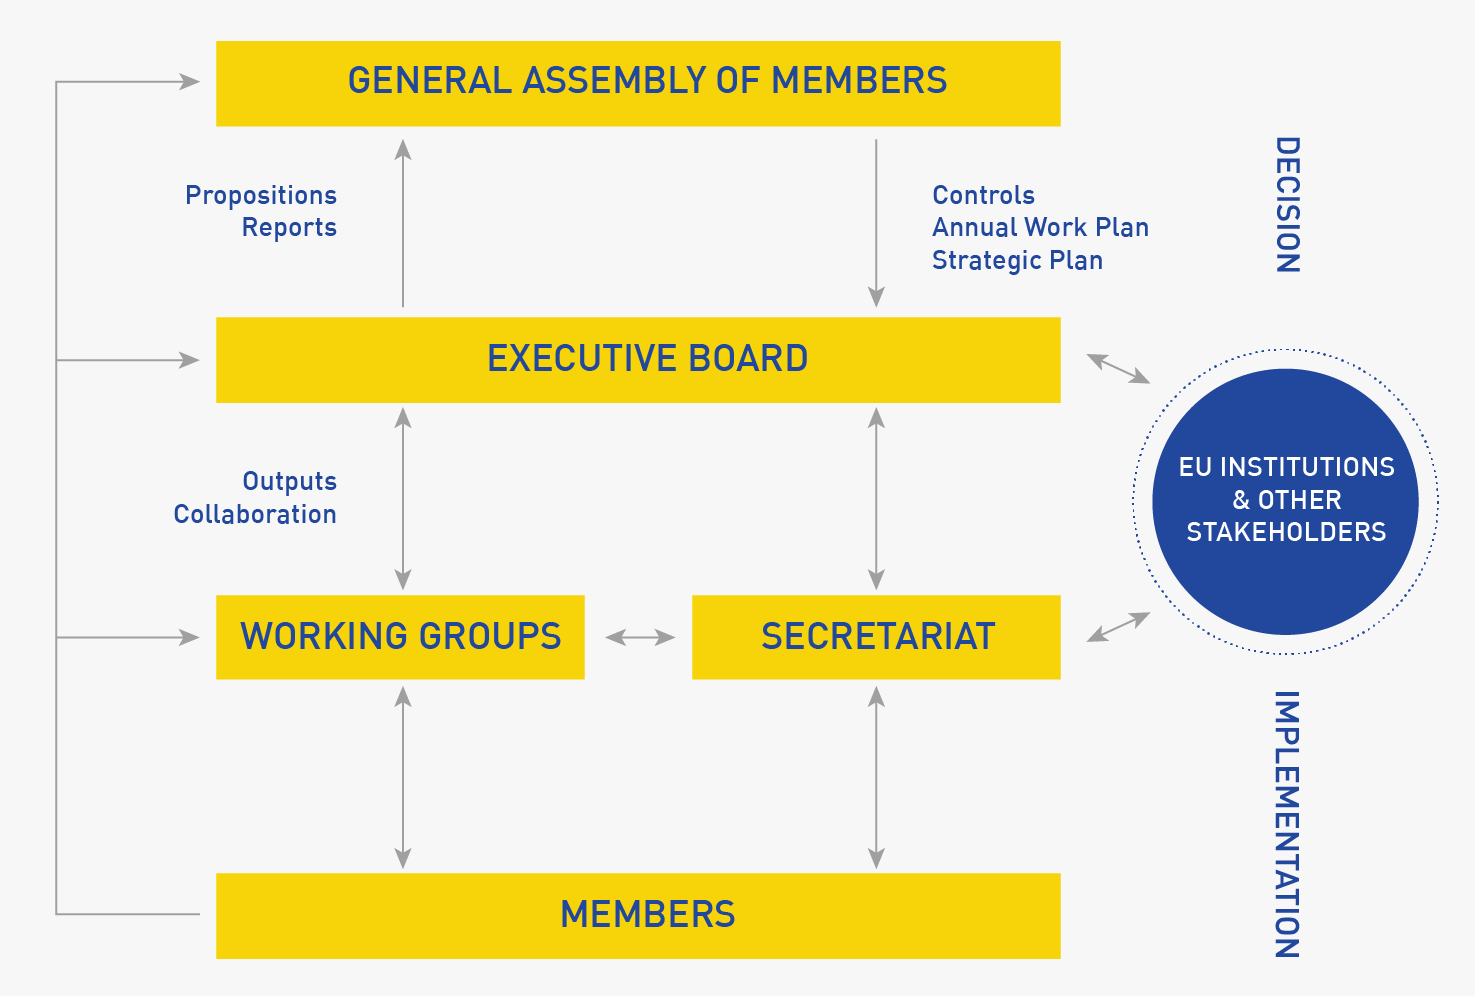 General Assembly of Members - Executive Board - Working Groups - Secretariat - Members